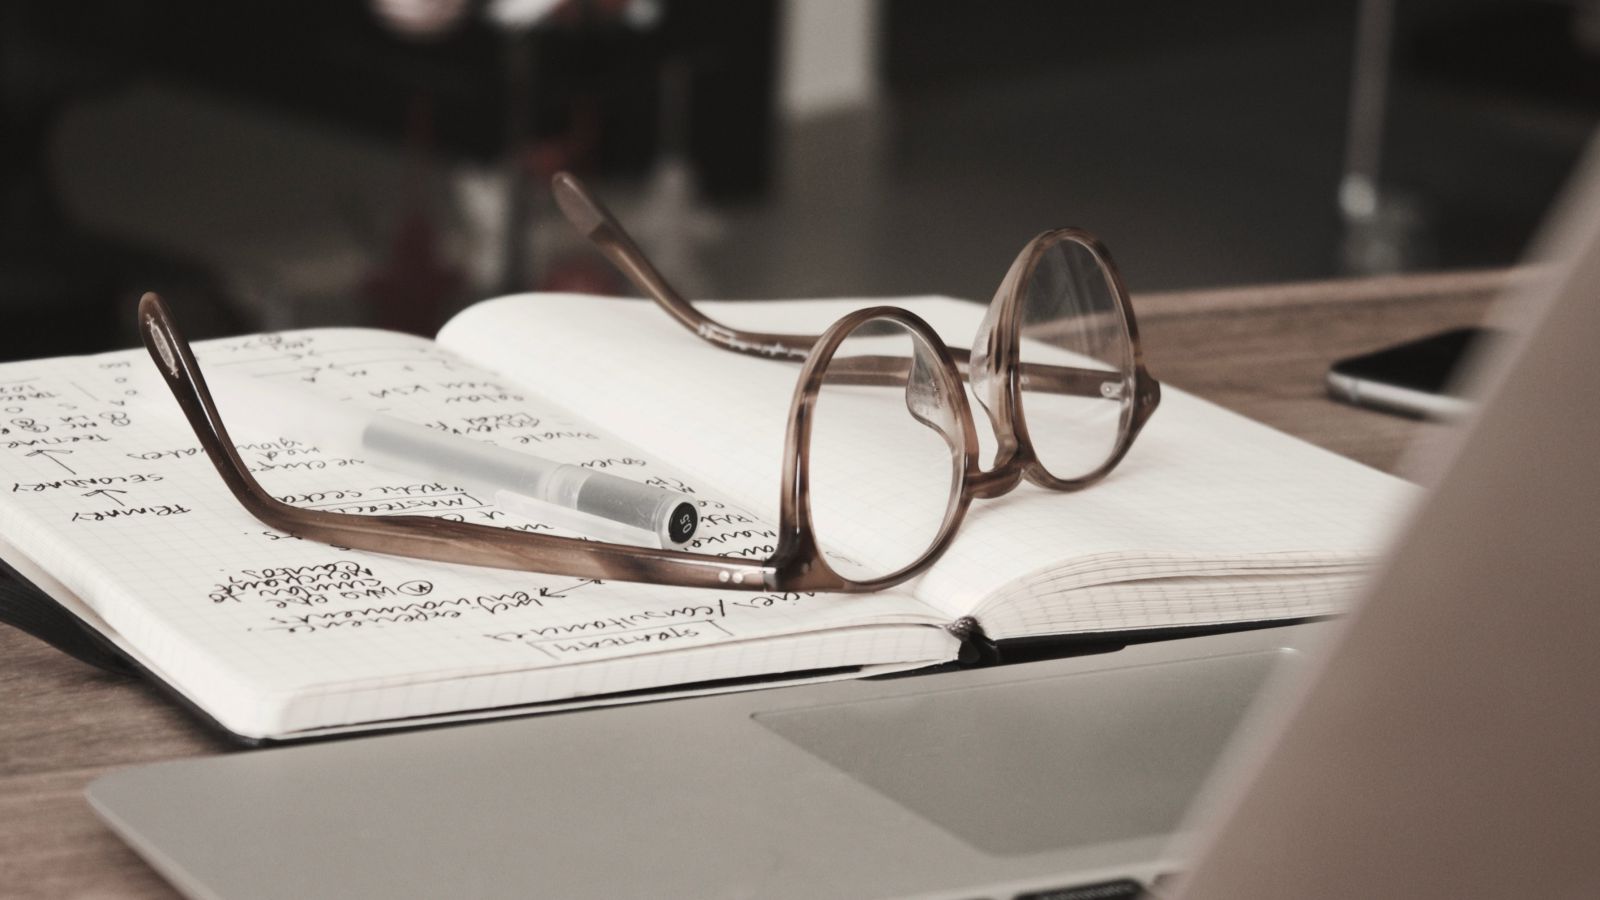 Caderno com escritos e óculos de grau sobre uma mesa de madeira